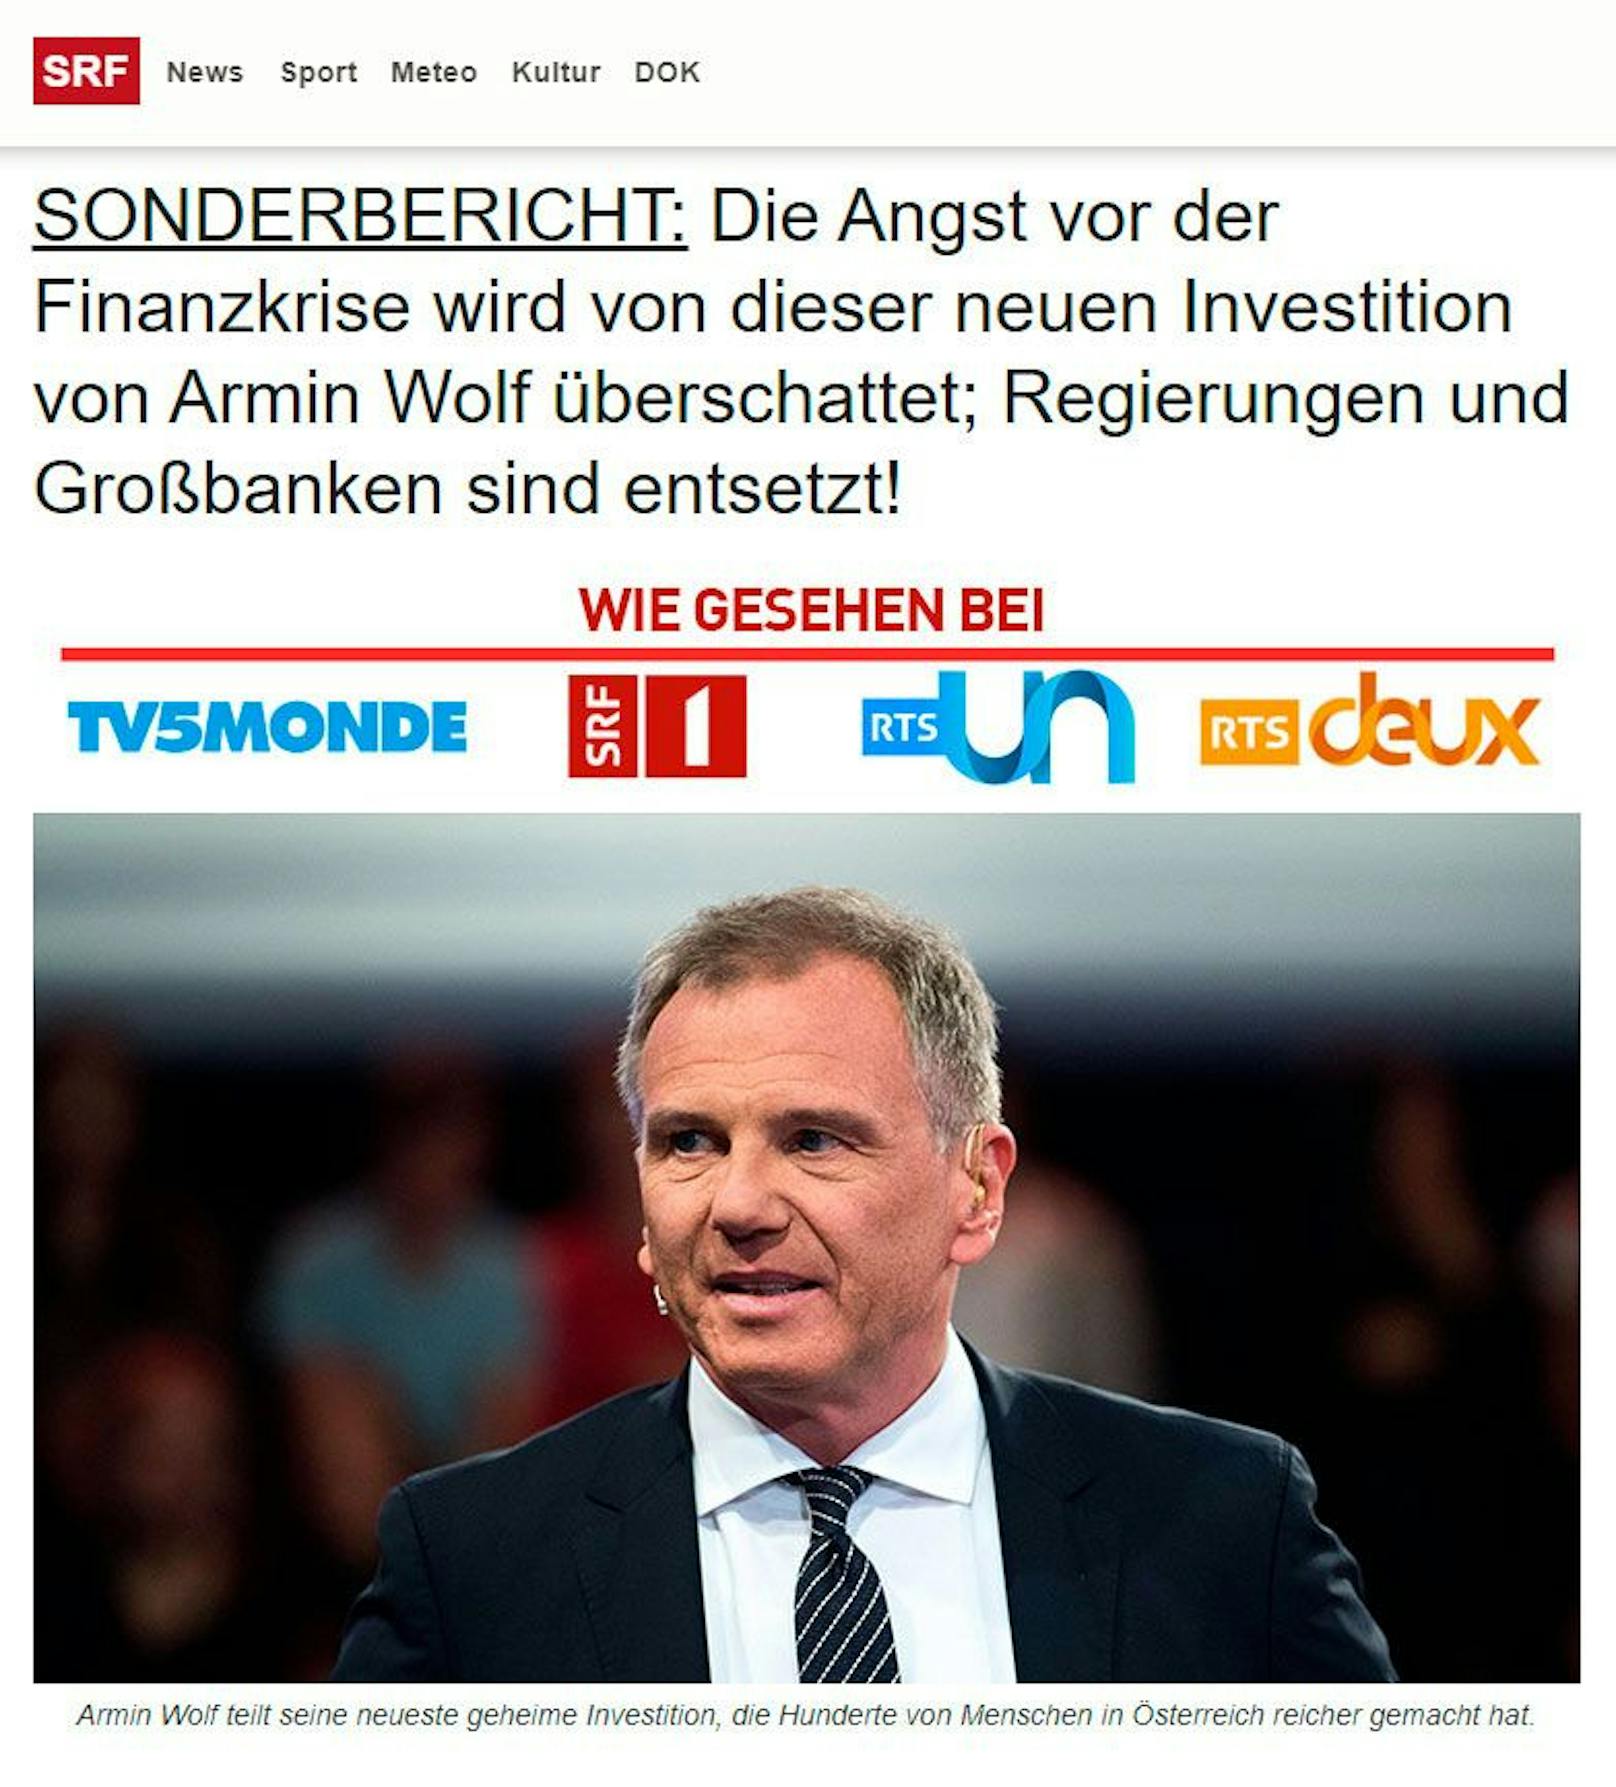 Betrügerische Seiten wie diese lassen ORF-Star Armin Wolf völlig ausrasten. Kriminelle nutzen seinen guten Namen und seine Bekanntheit...